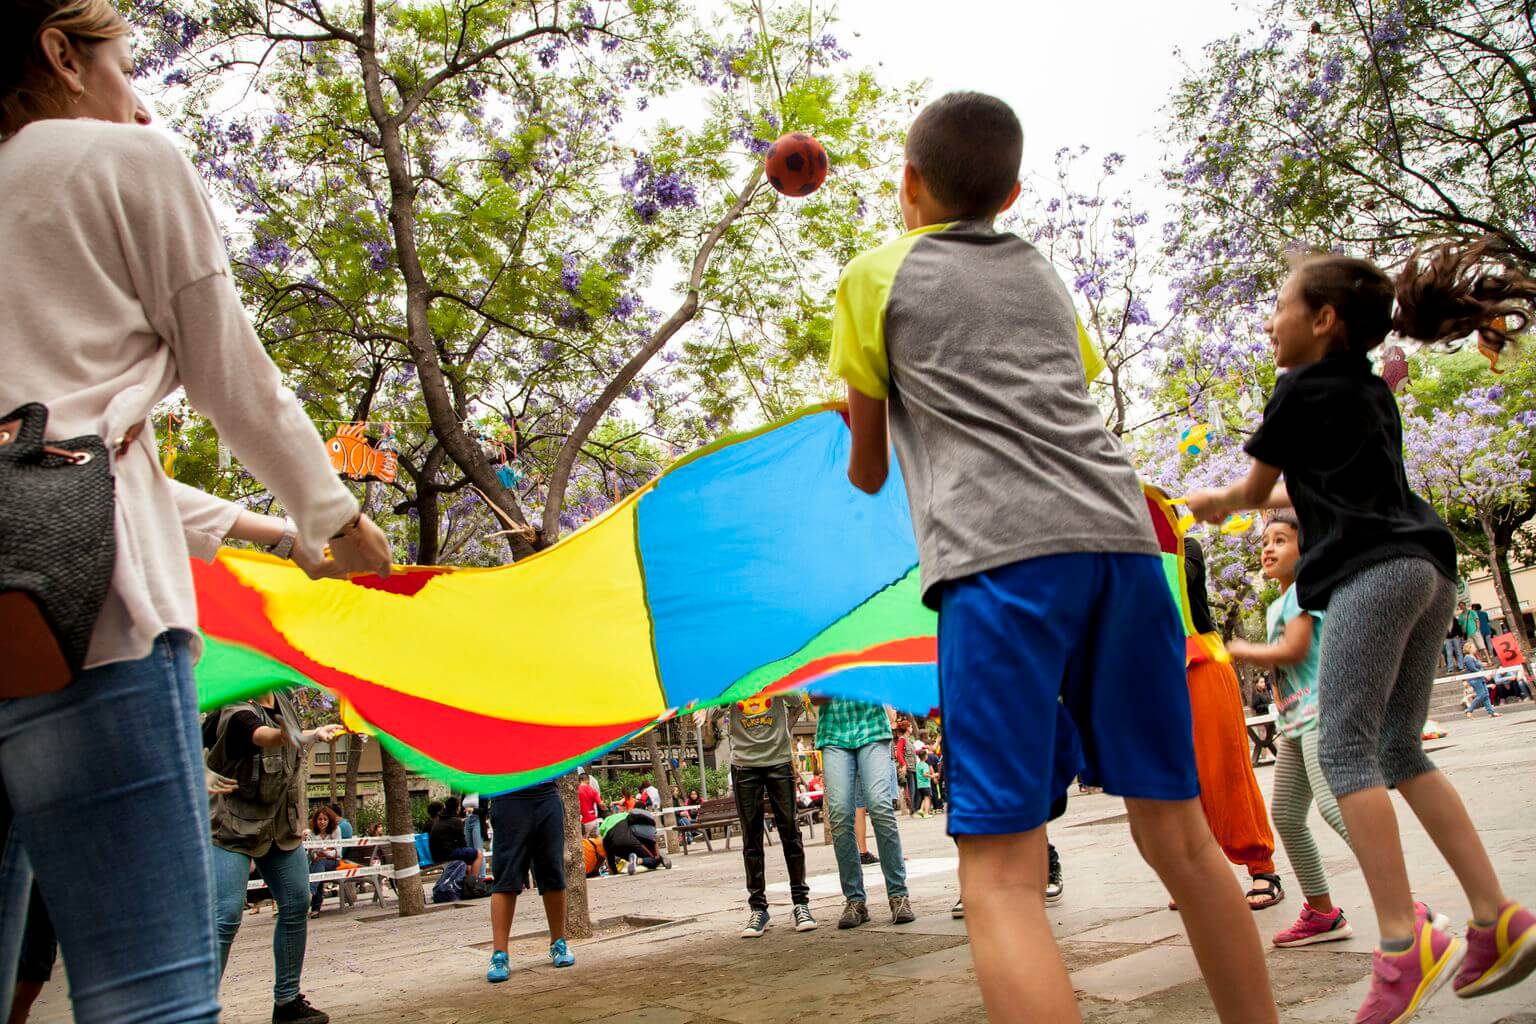 Uns nens jugant amb una tela de colors que fa volar una pilota. <span>Carlota Serarols</span>